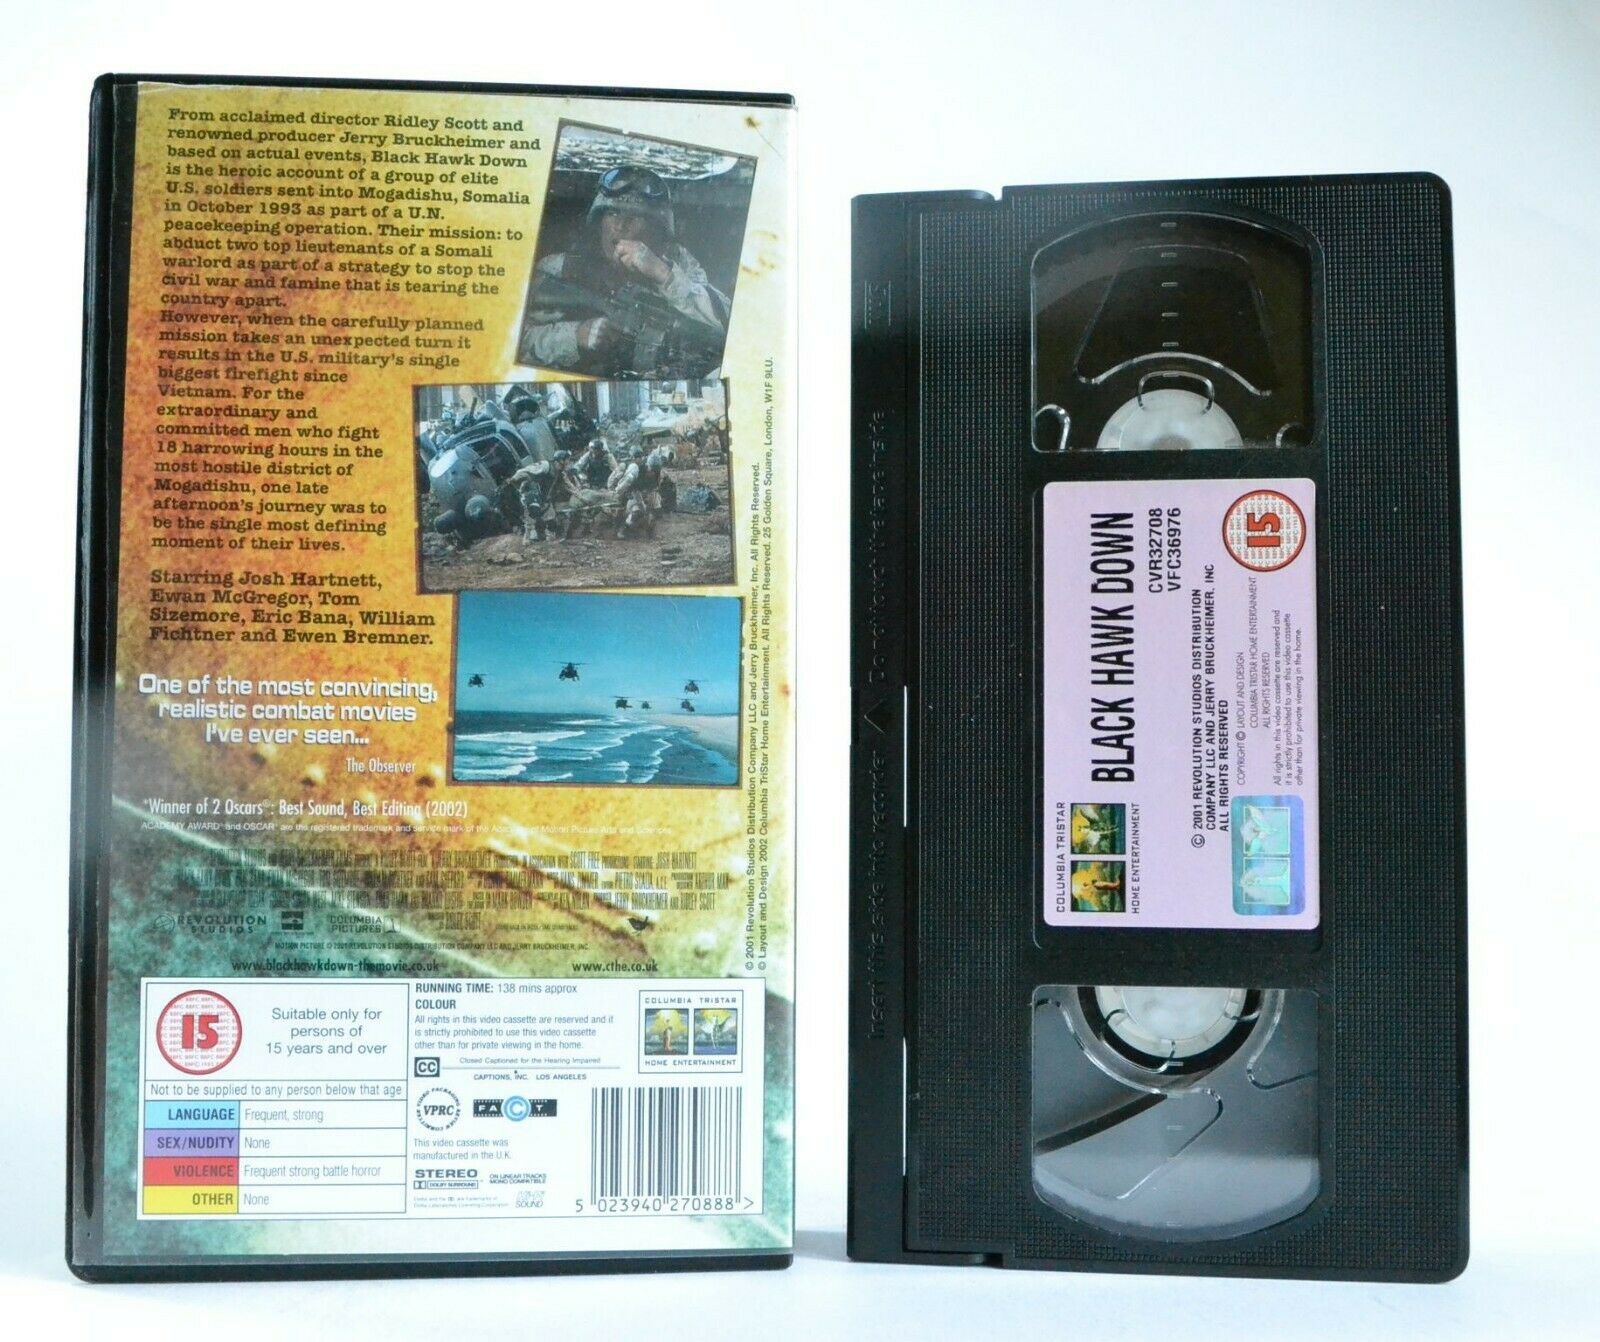 Black Hawk Down (2002): A Ridley Scott Film - War Drama - Josh Hartnett - VHS-